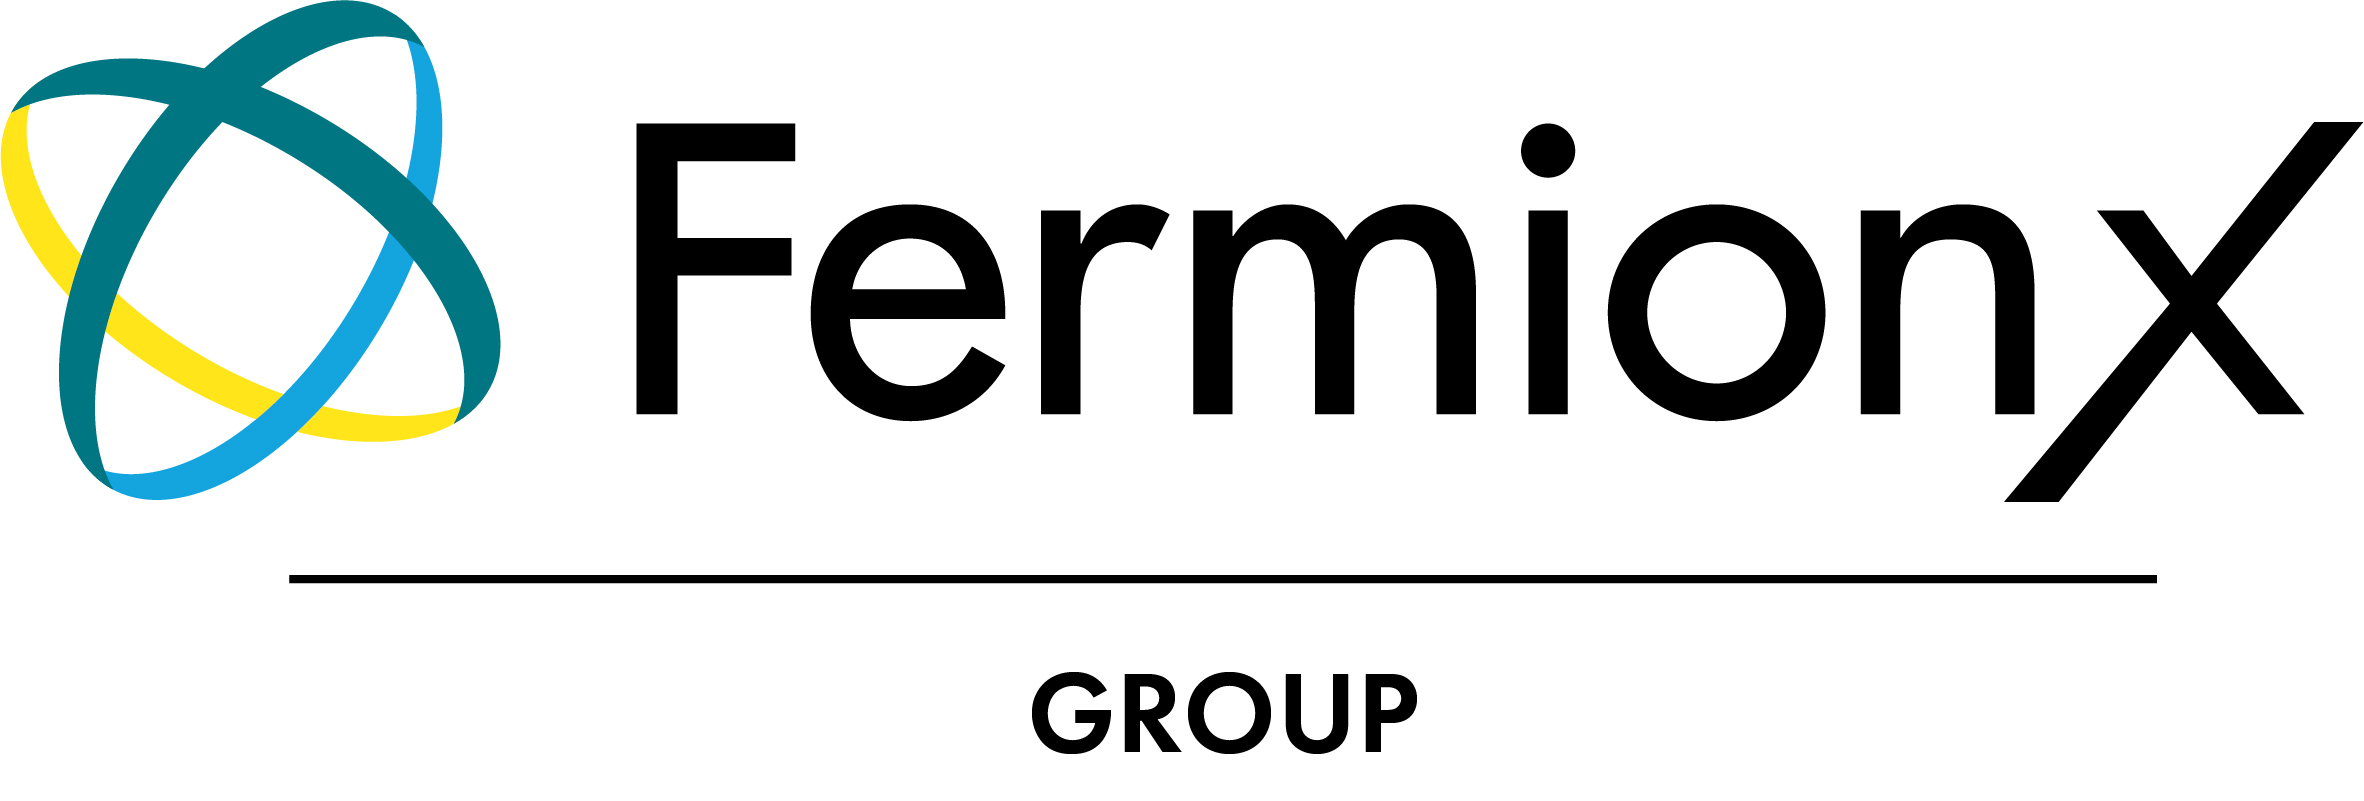 FermionX Group Ltd